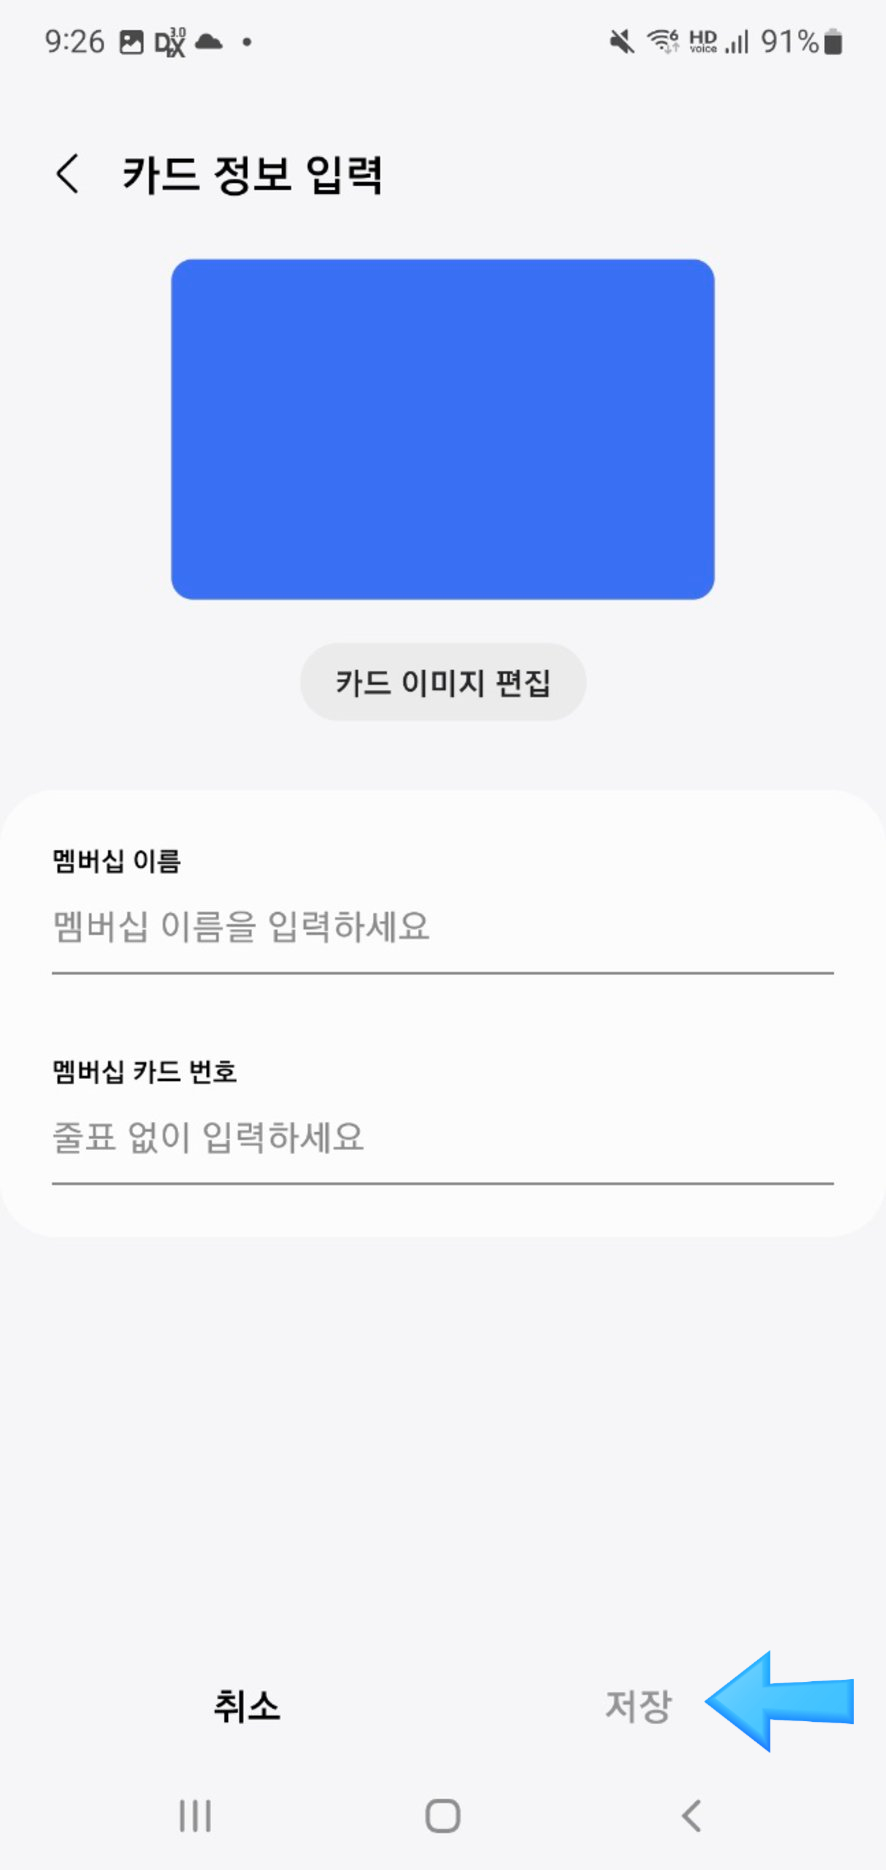 삼성 월렛 멤버십 카드 등록 방법 (구 삼성 페이)